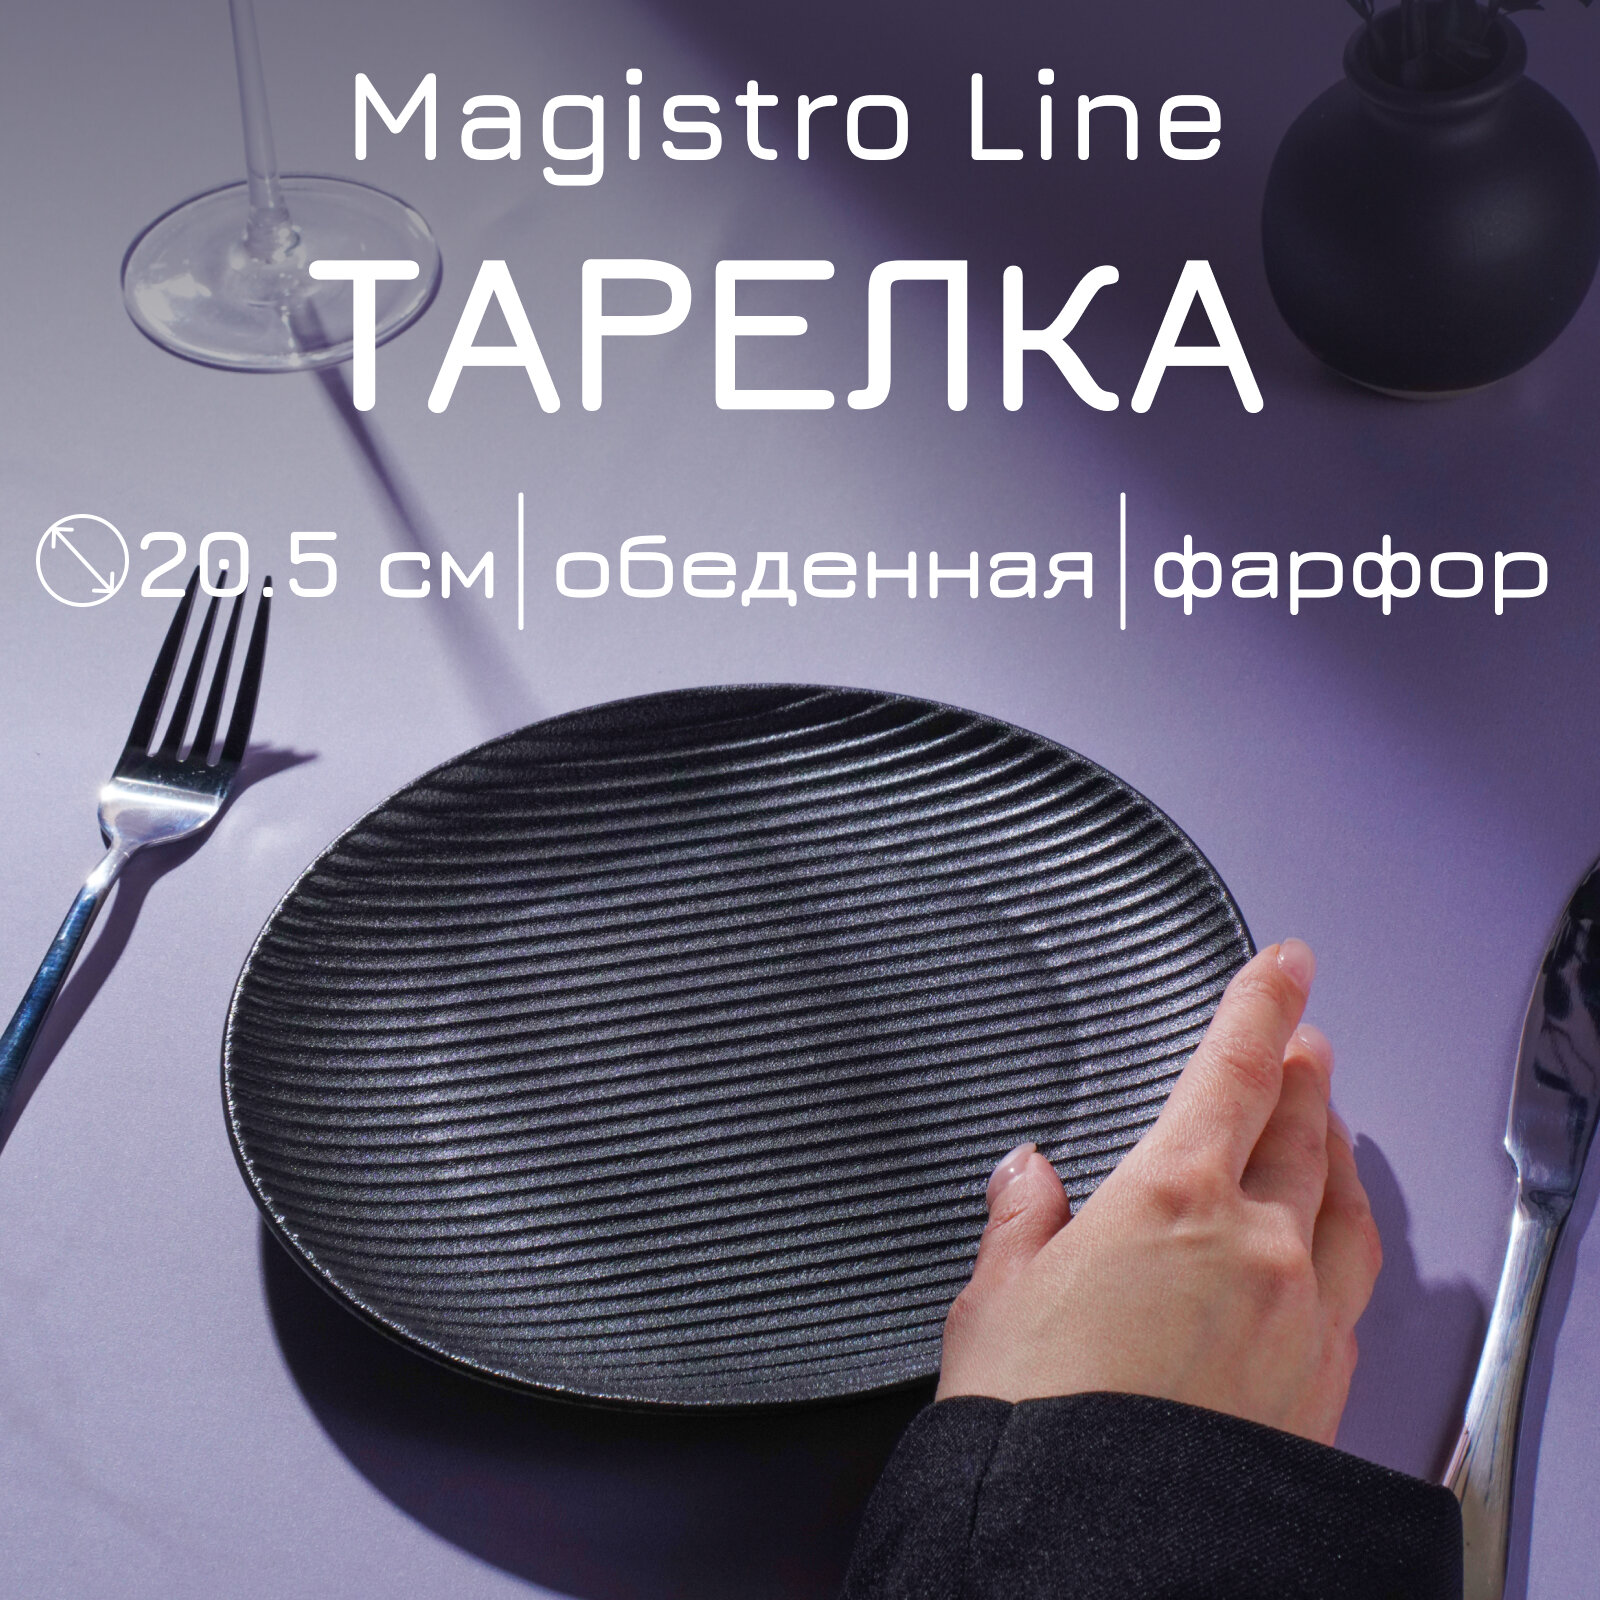 Тарелка Magistro Line фарфоровая d=20,5 см